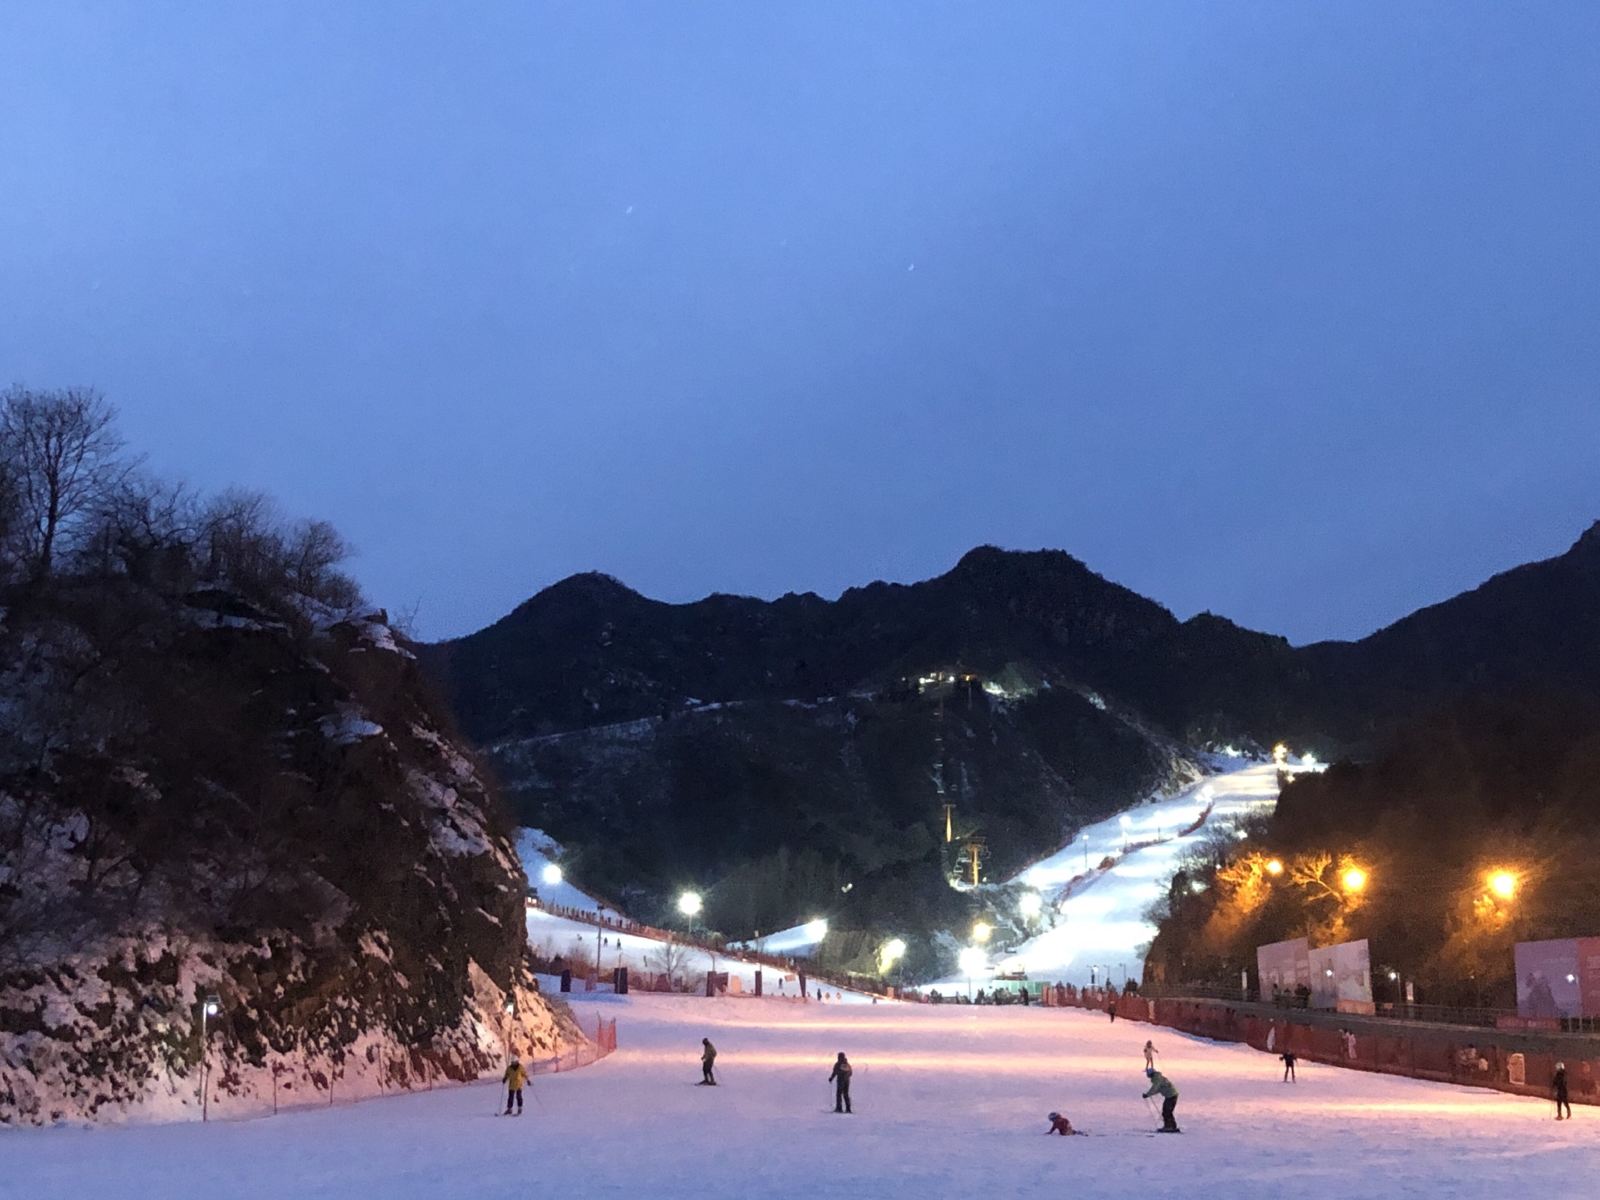 【低于三折】北京大兴雪都滑雪场又来了，暖冬福利大放送，在滑雪的动次打次中嗨翻这个冬季！！！ - 小泥人